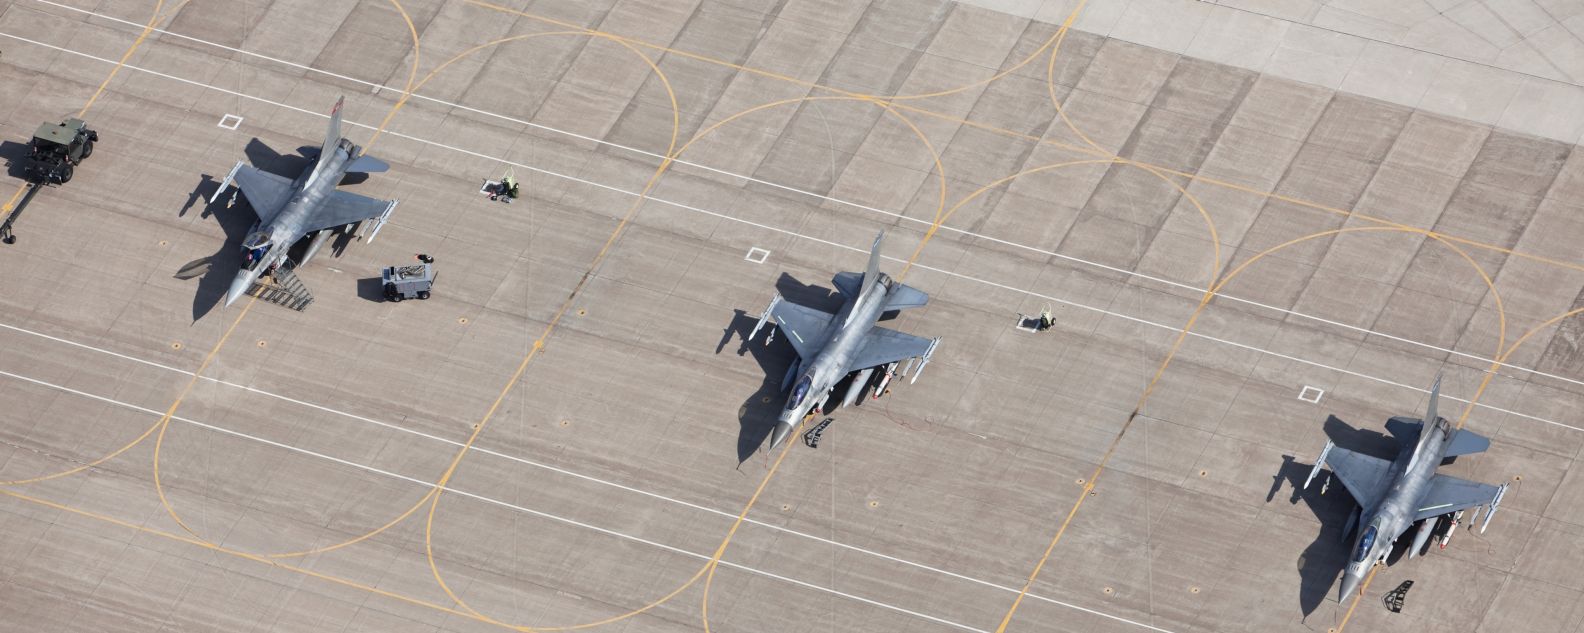 3機のF-16戦闘機が駐機場で飛行準備完了